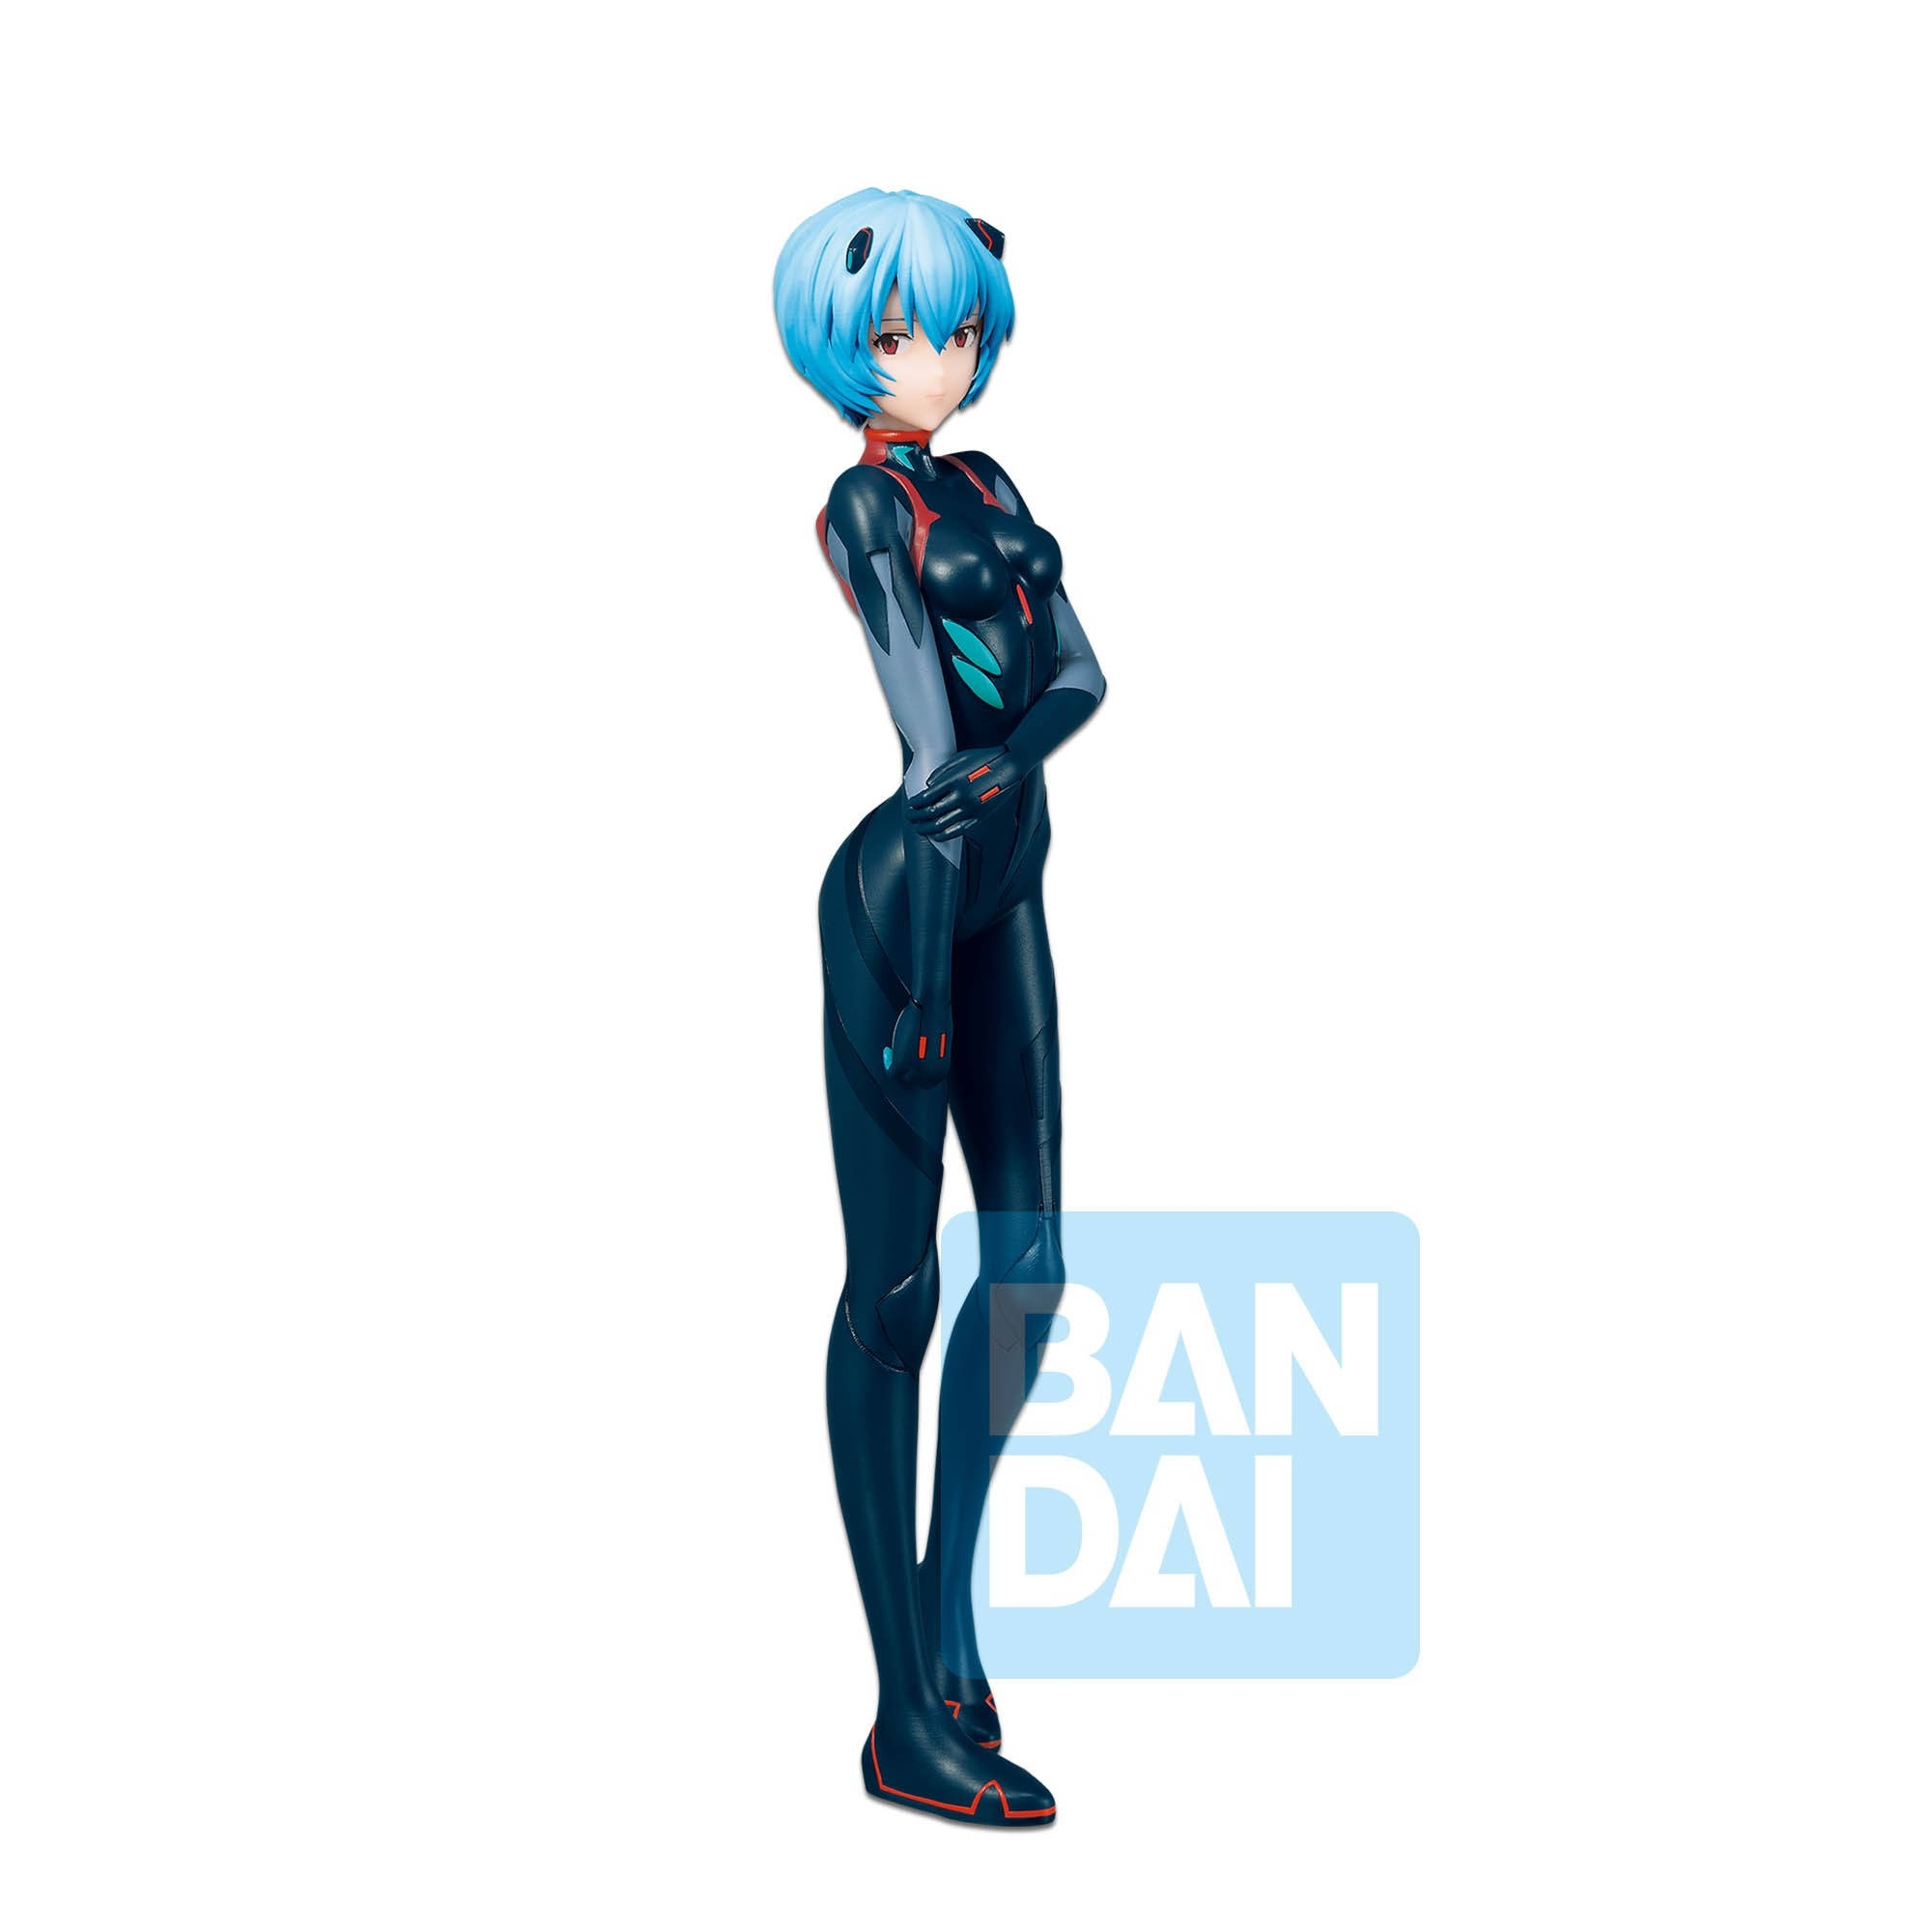 Evangelion - Figurine Tentative Name Rei Ayanami Ichibancho Evangelion 3.0+1